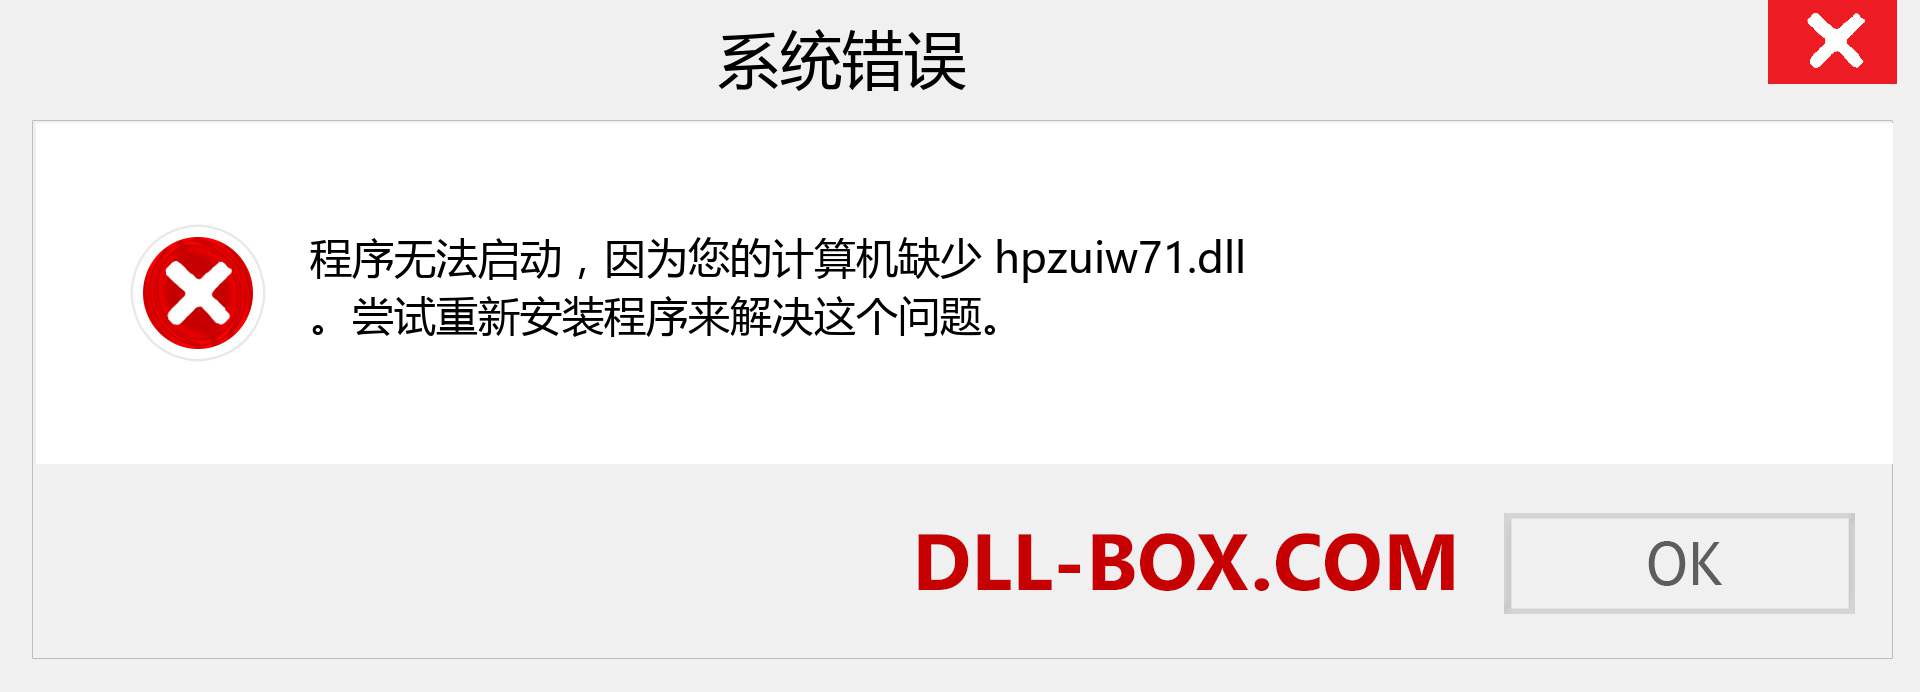 hpzuiw71.dll 文件丢失？。 适用于 Windows 7、8、10 的下载 - 修复 Windows、照片、图像上的 hpzuiw71 dll 丢失错误